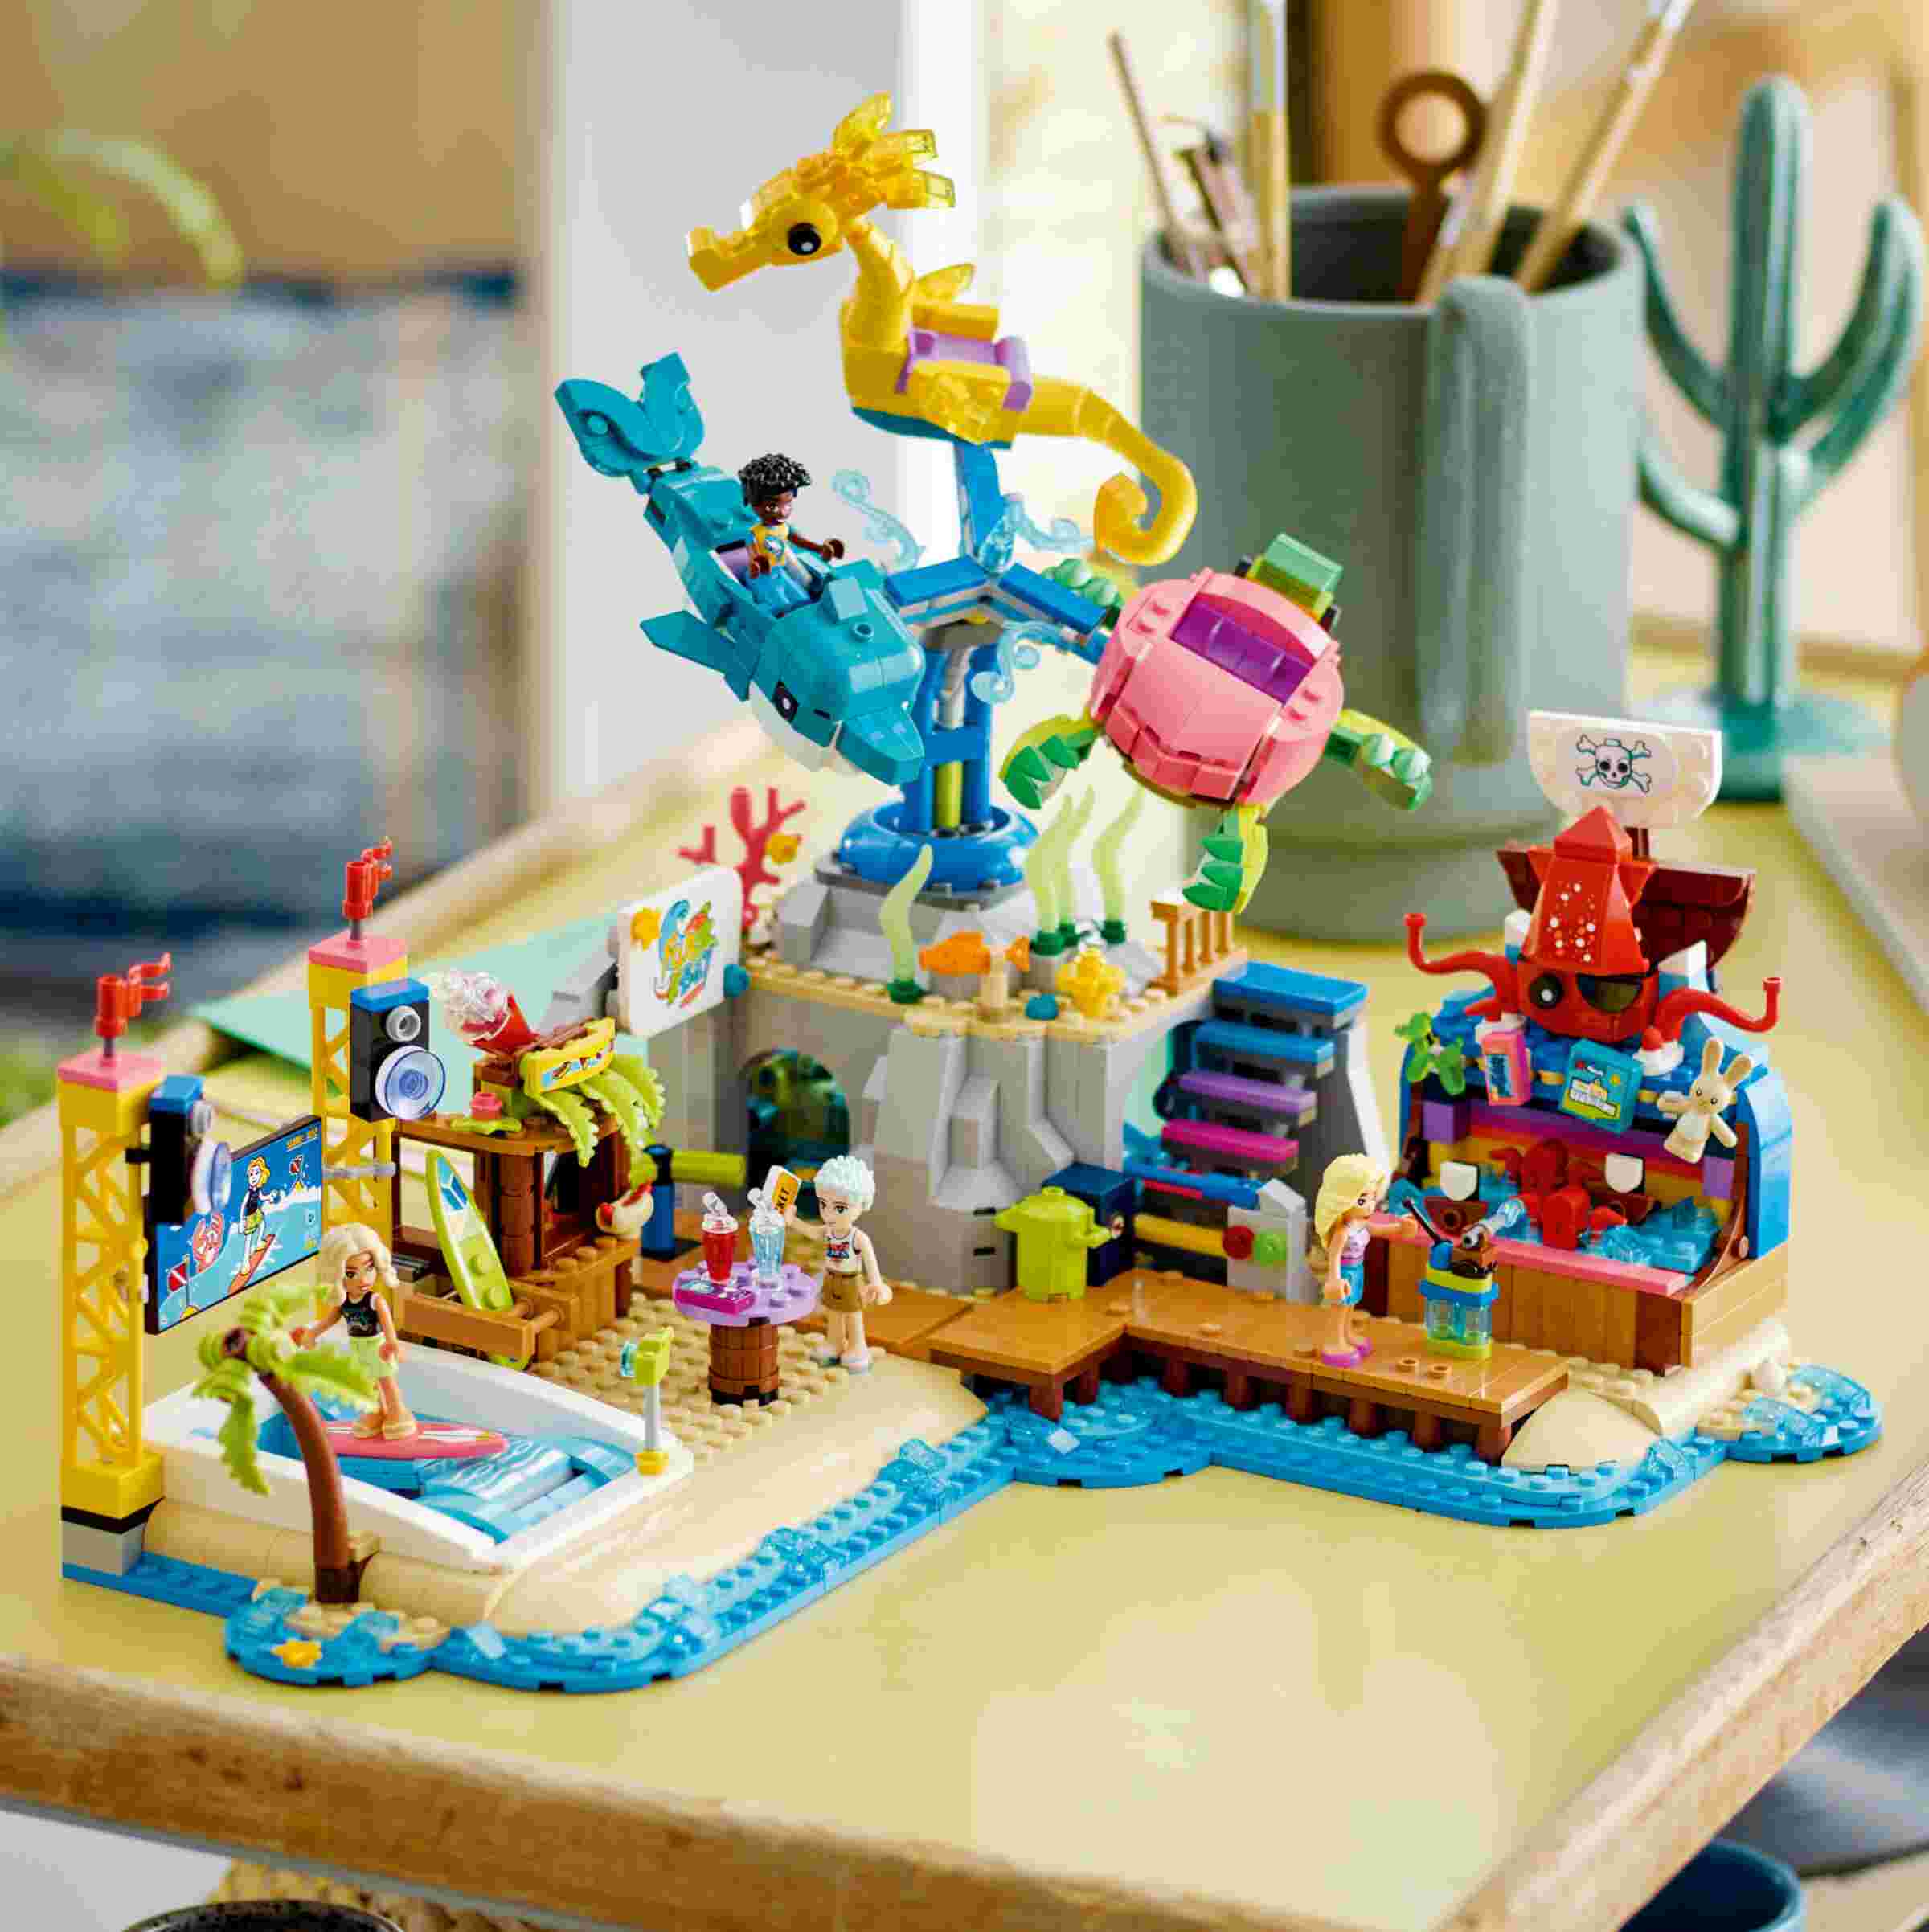 LEGO 41737 Friends Strand-Erlebnispark, 4 Spielfiguren, Karussell, Schießbude